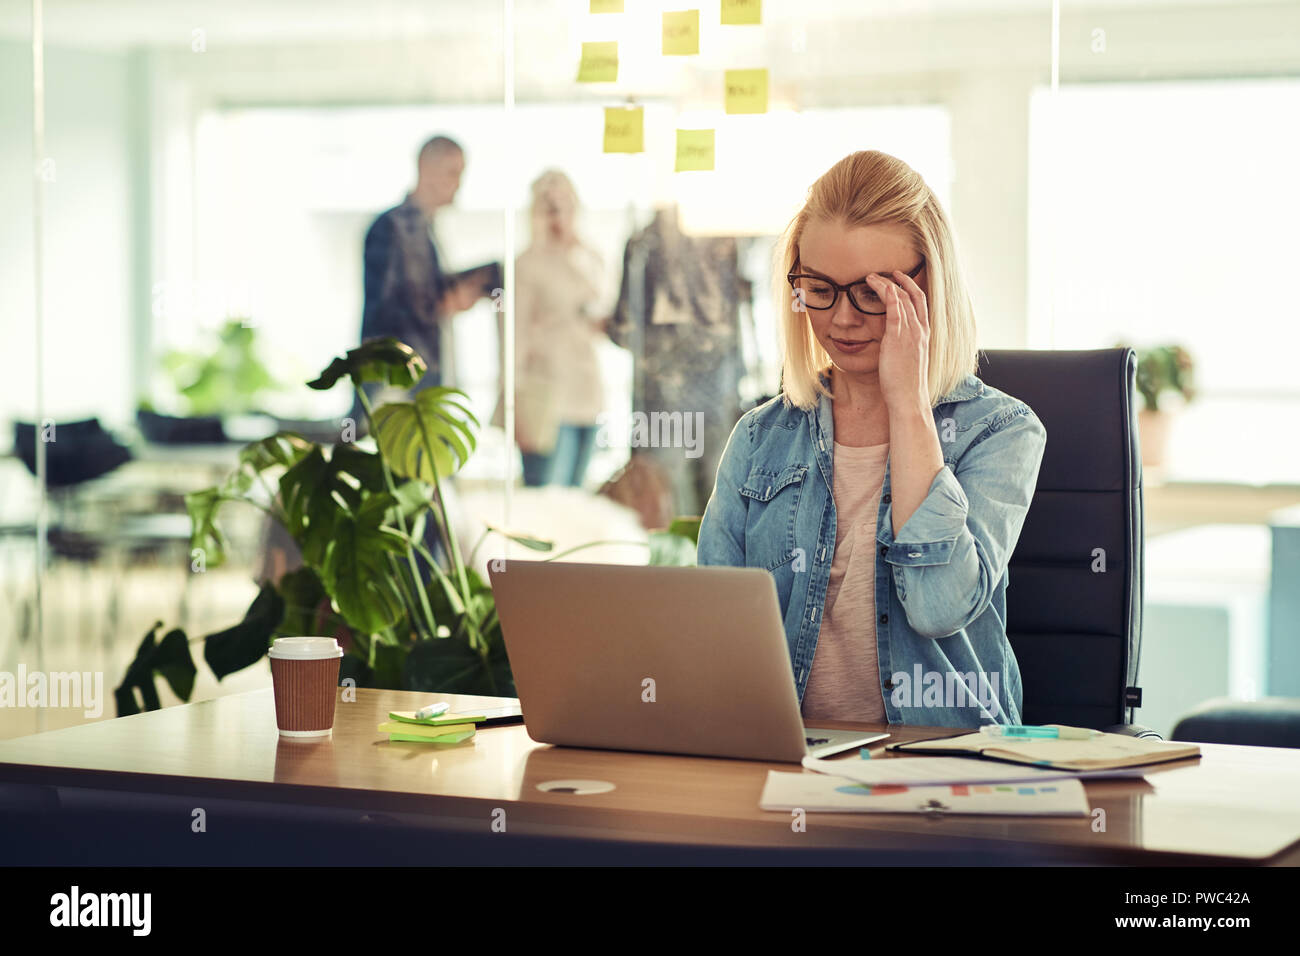 Habillé décontracté young businesswoman wearing glasses concentrée sur son travail alors qu'assis à un bureau dans un bureau moderne à l'aide d'un ordinateur portable Banque D'Images